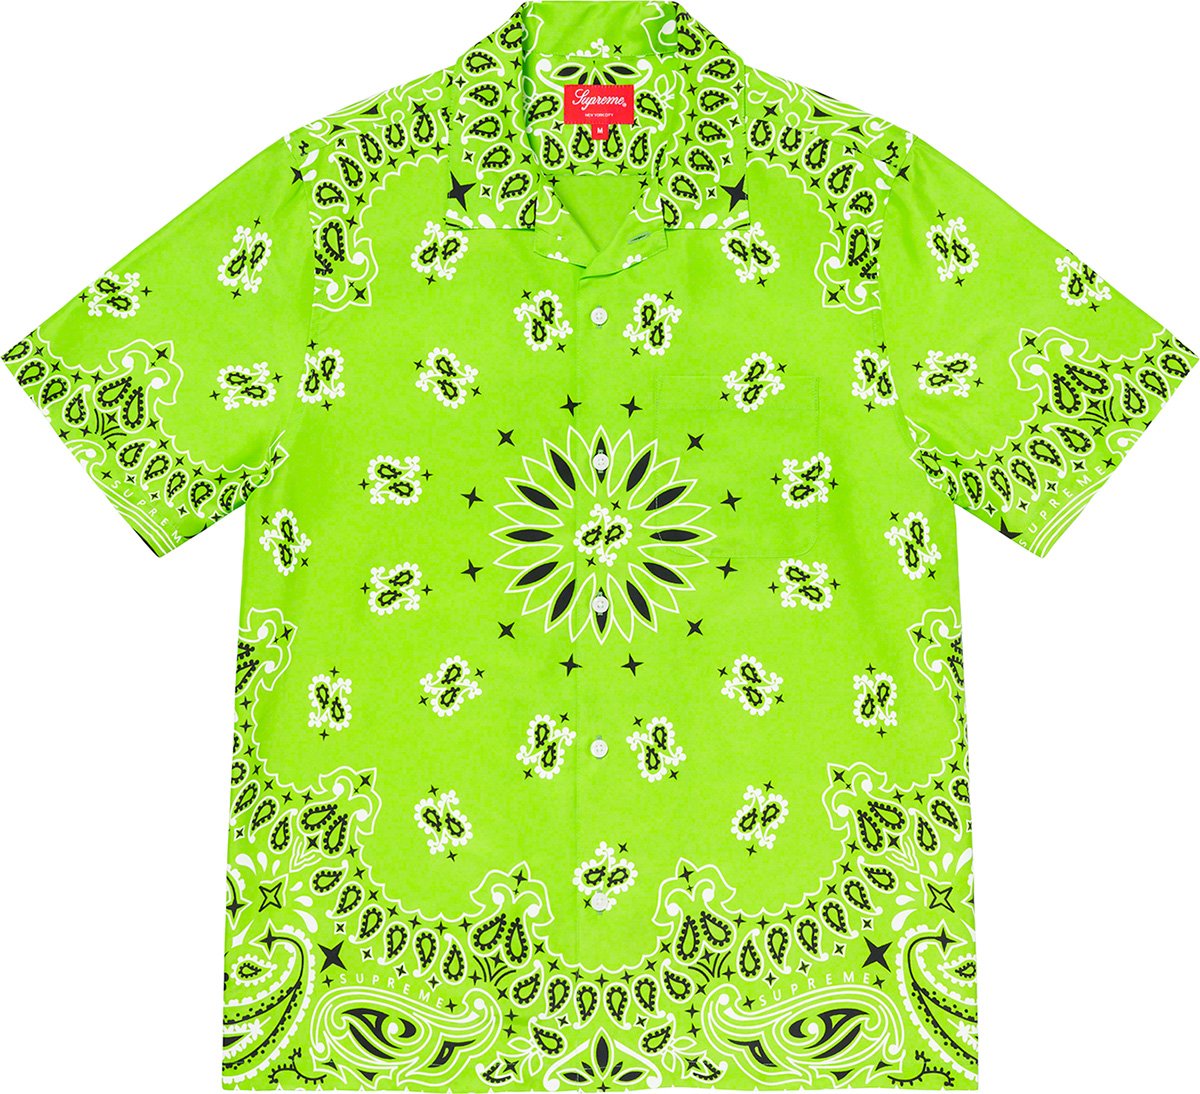 Bandana Silk S S Shirt - spring summer 2021 - Supreme